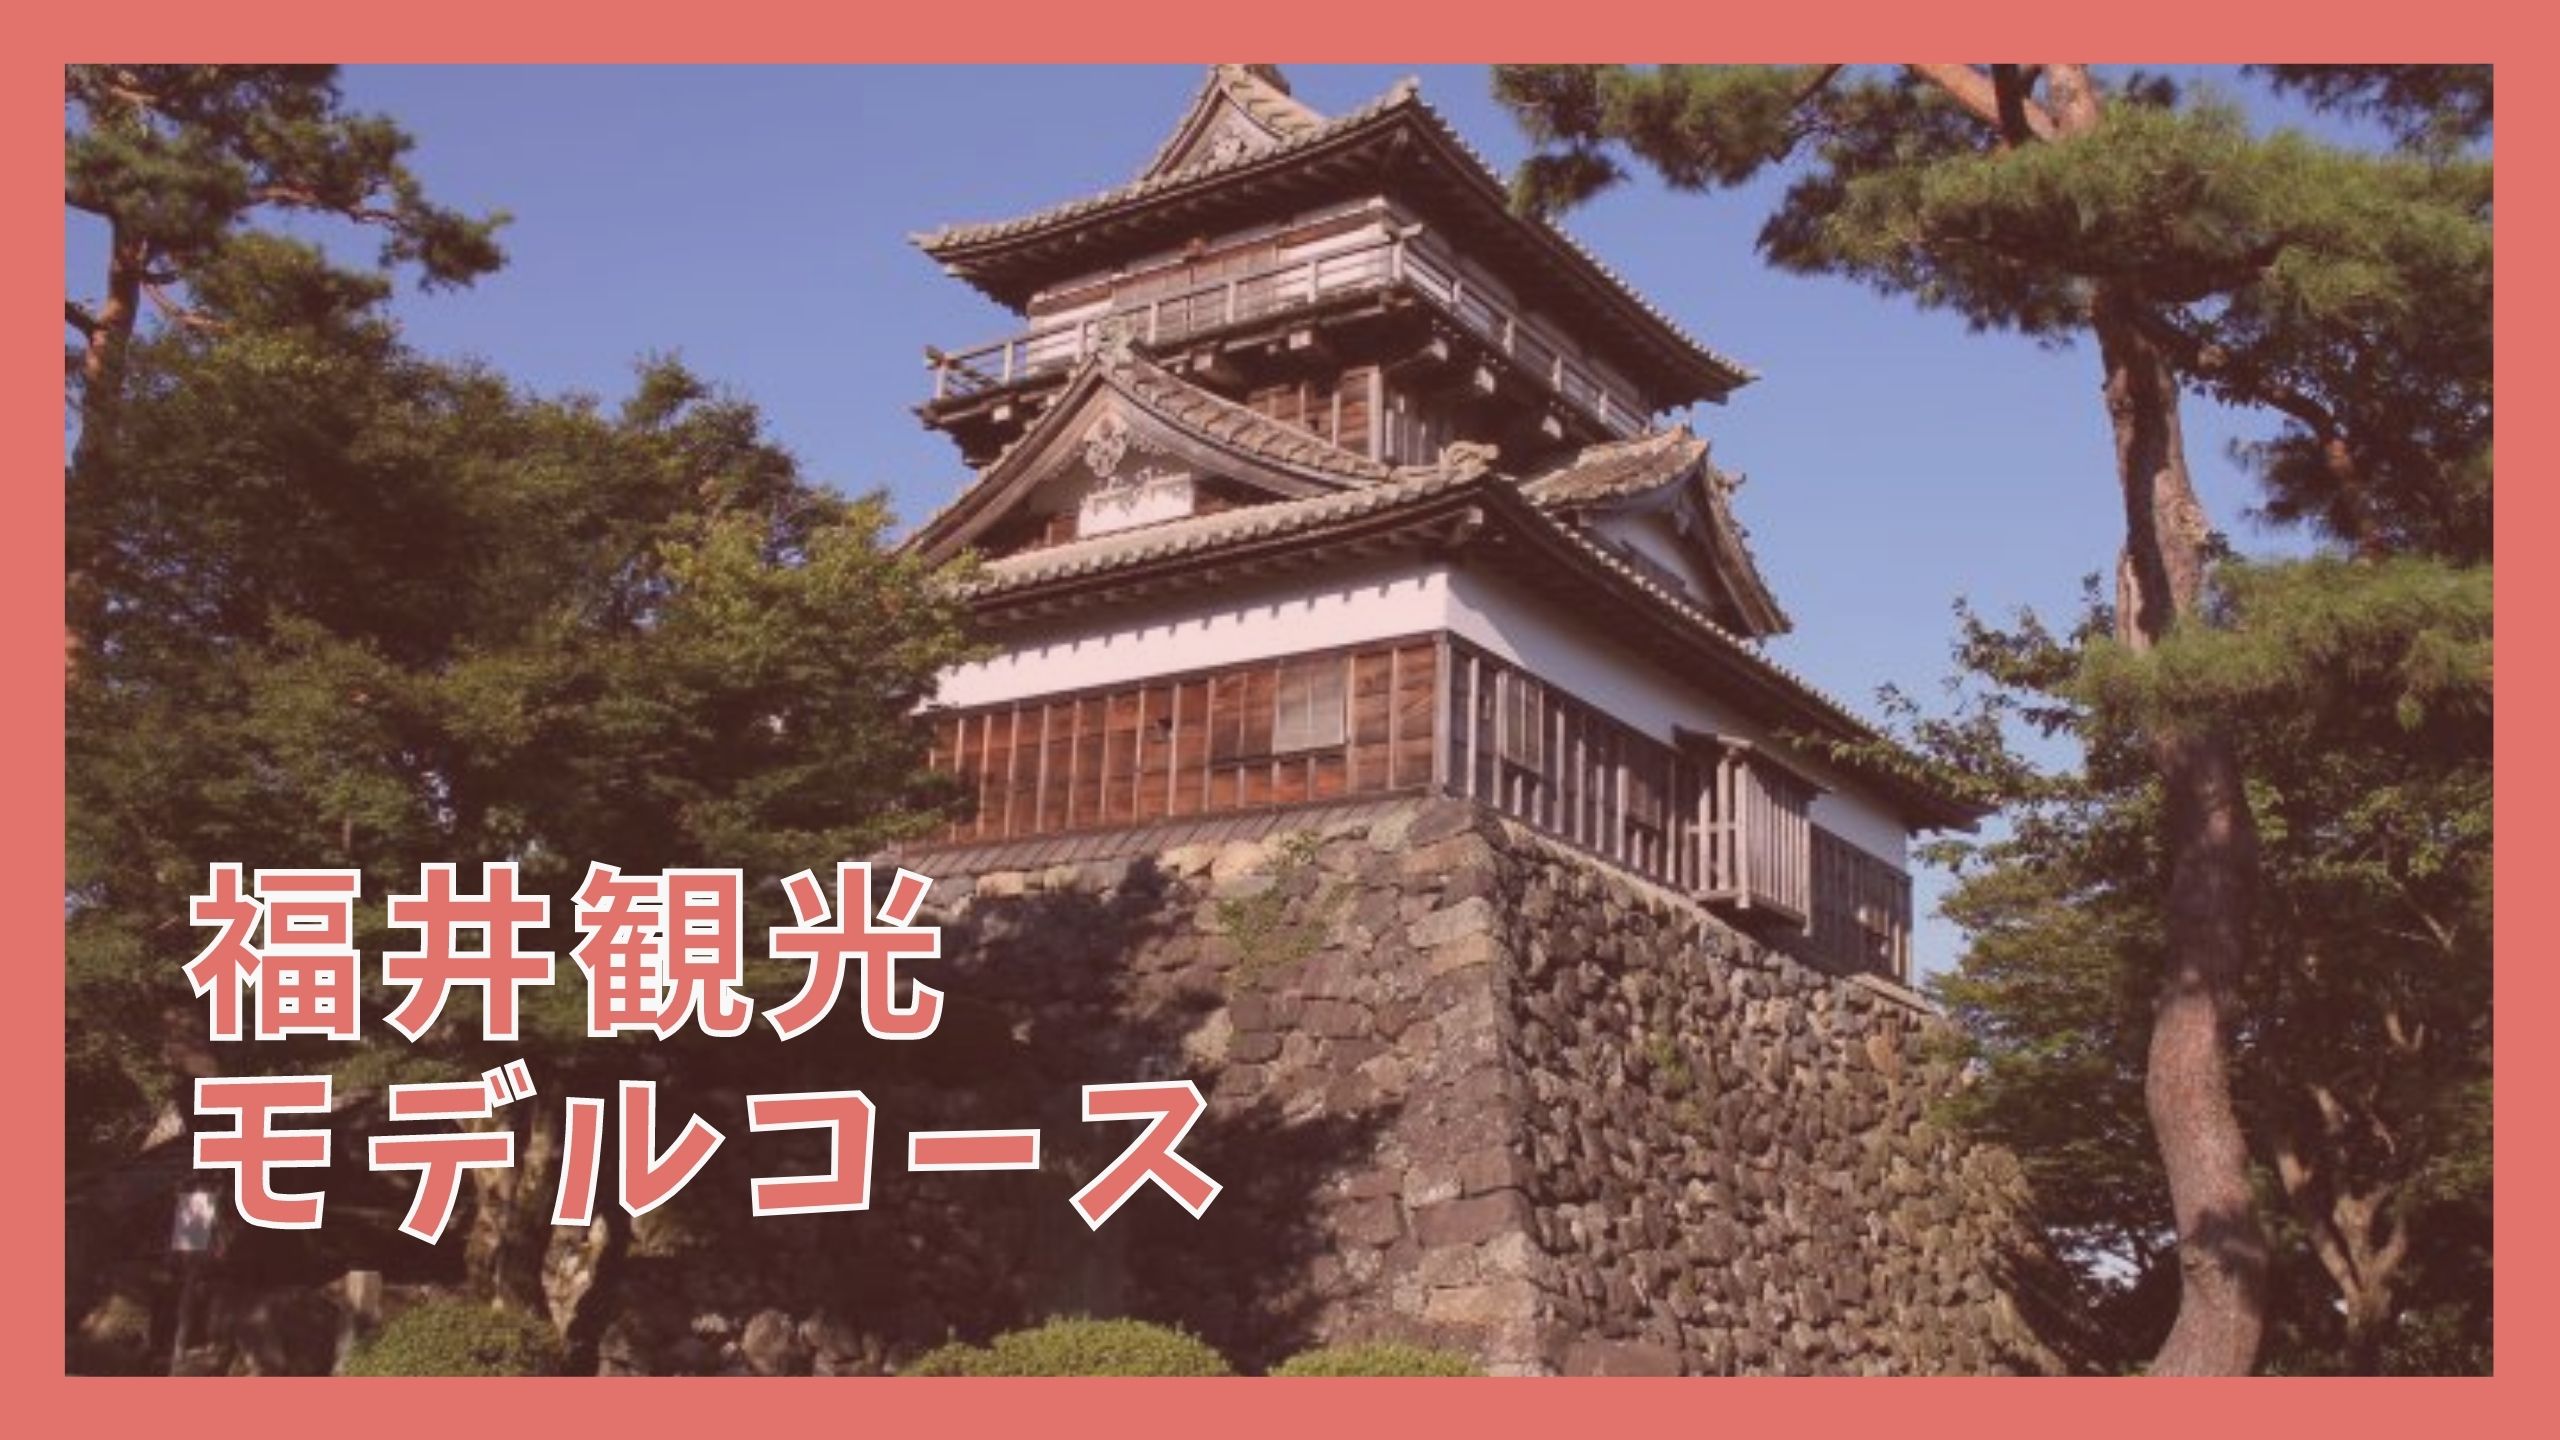 福井観光モデルコース 1泊2日で巡る10の観光名所 ジャパンワンダラー